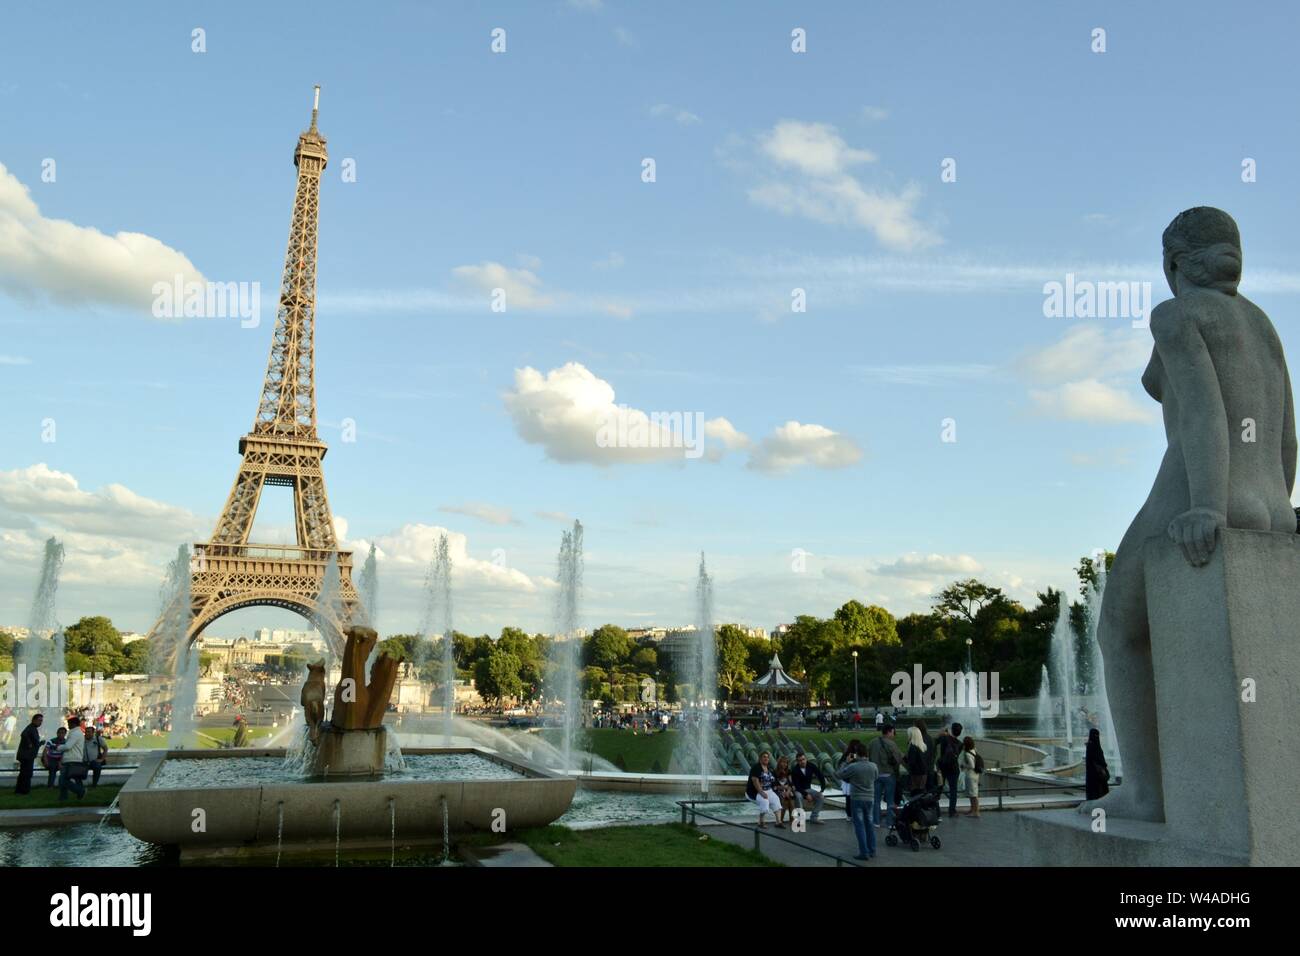 París, Francia - 18 de agosto de 2014: Vista de la estatua llamada mujer, la Femme, de la fuente de Varsovia y de la Torre Eiffel en el fondo. Foto de stock